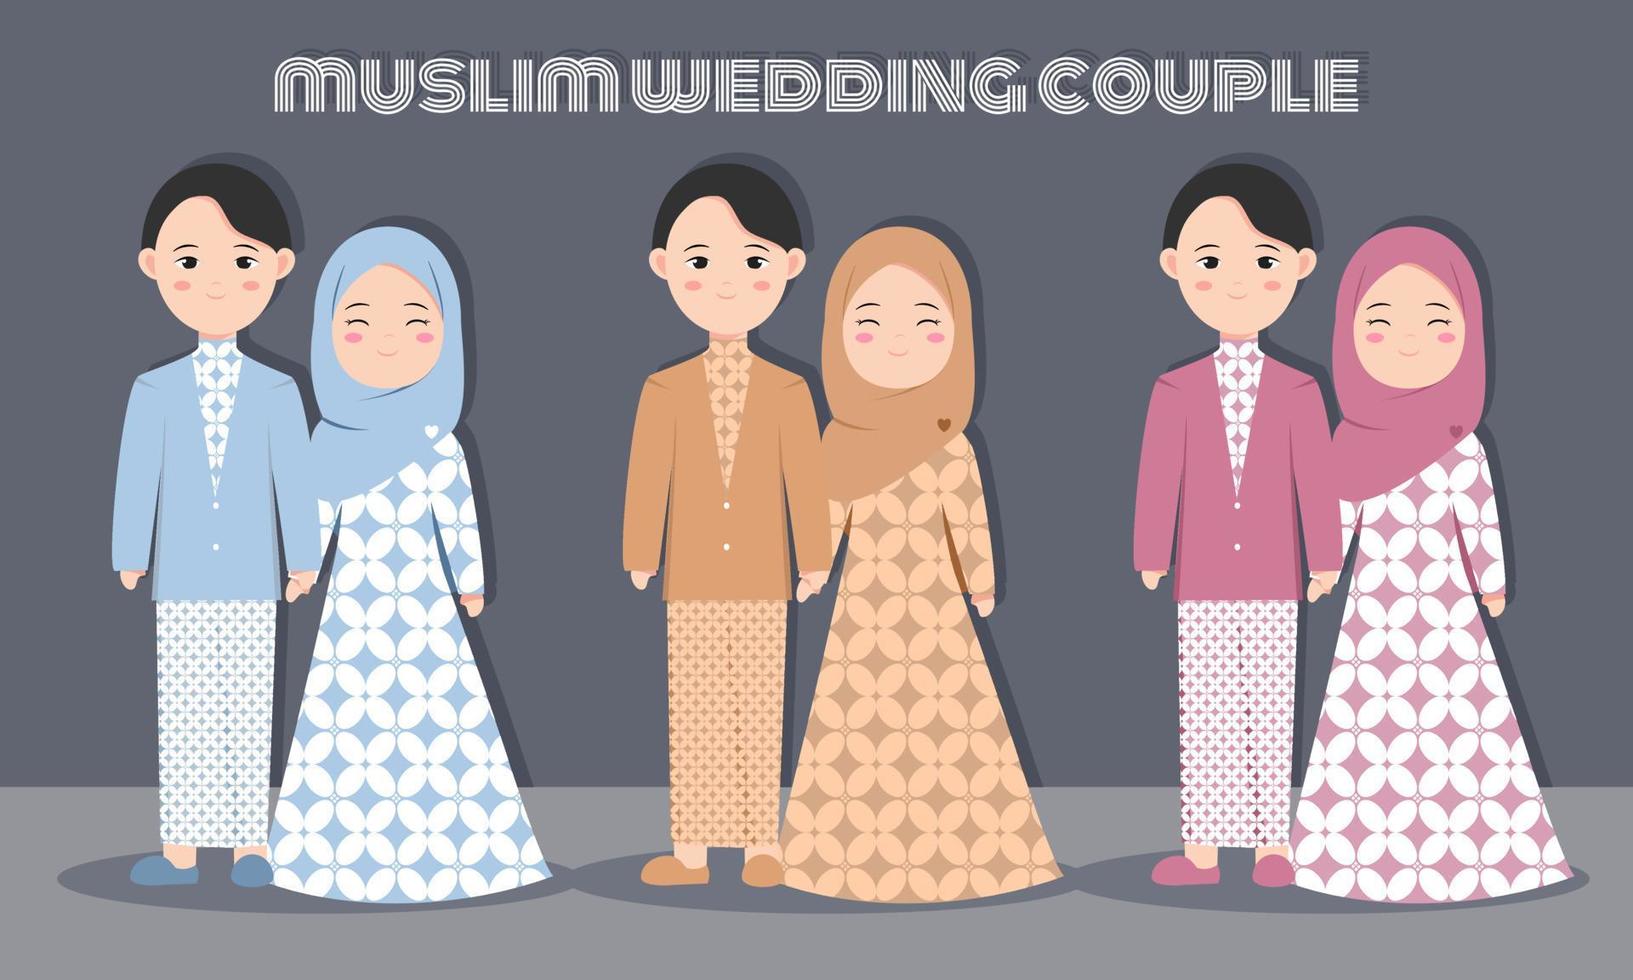 Lindo personaje de pareja musulmana con vestido batik para boda o tarjeta de invitación de compromiso. ilustración vectorial en dibujos animados de una pareja enamorada vector